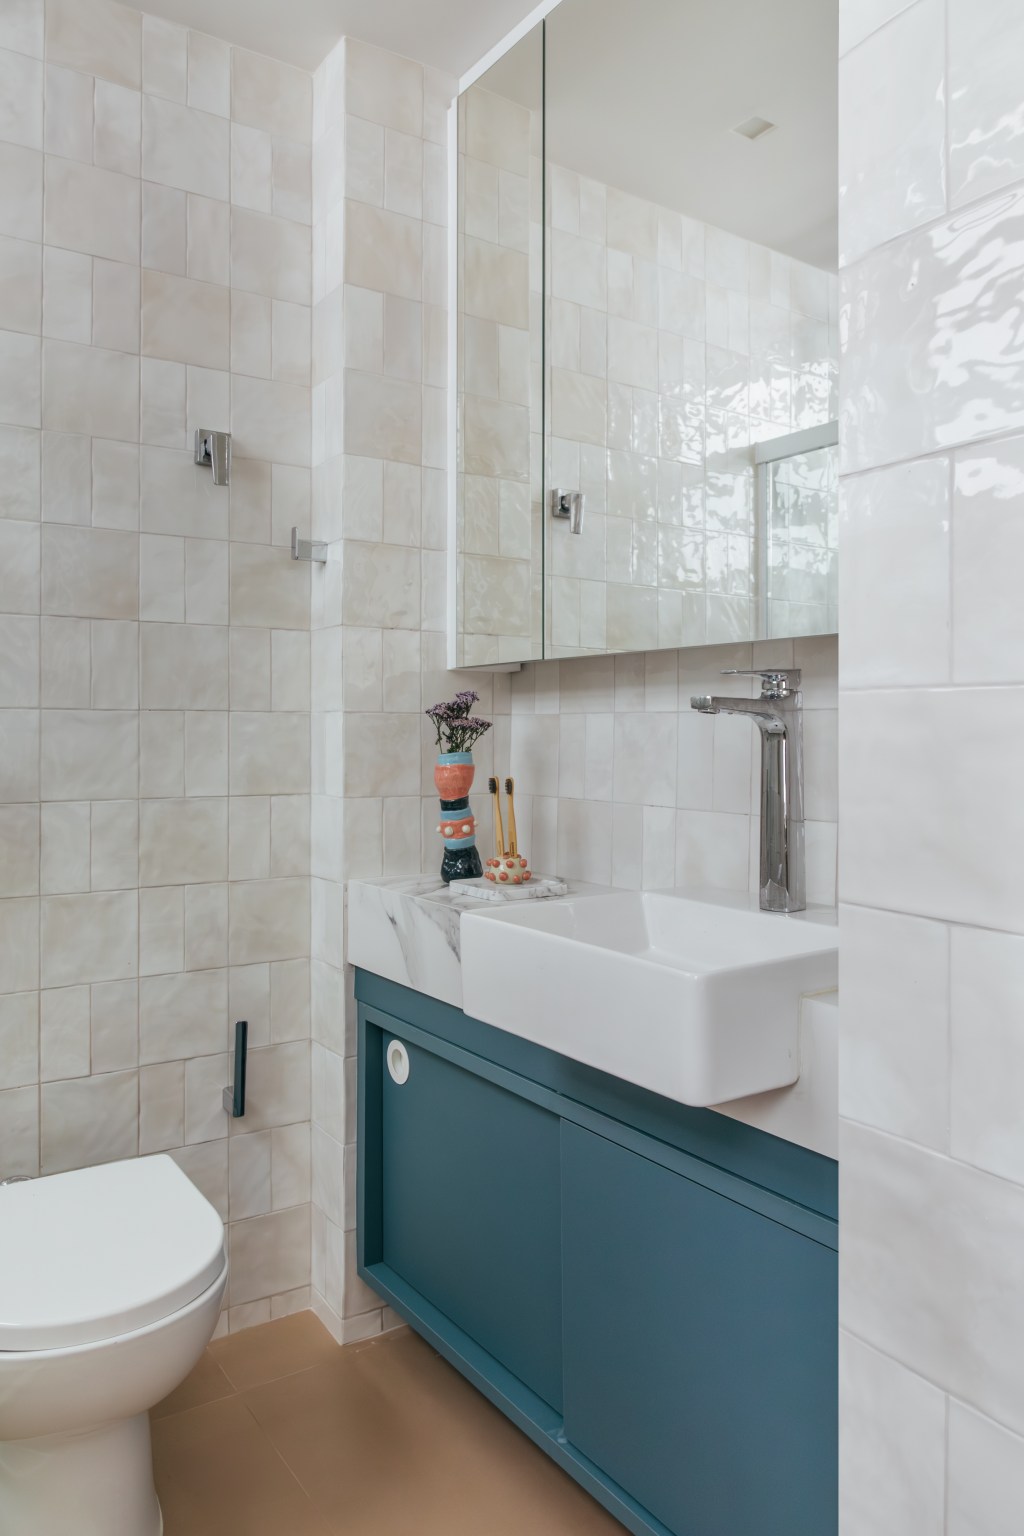 Loft de 30 m² é projetado para administradora de 80 anos que mora sozinha. Projeto de Richard de Mattos, da Casa Cururu. Na foto, banheiro com armário azul e espelho.